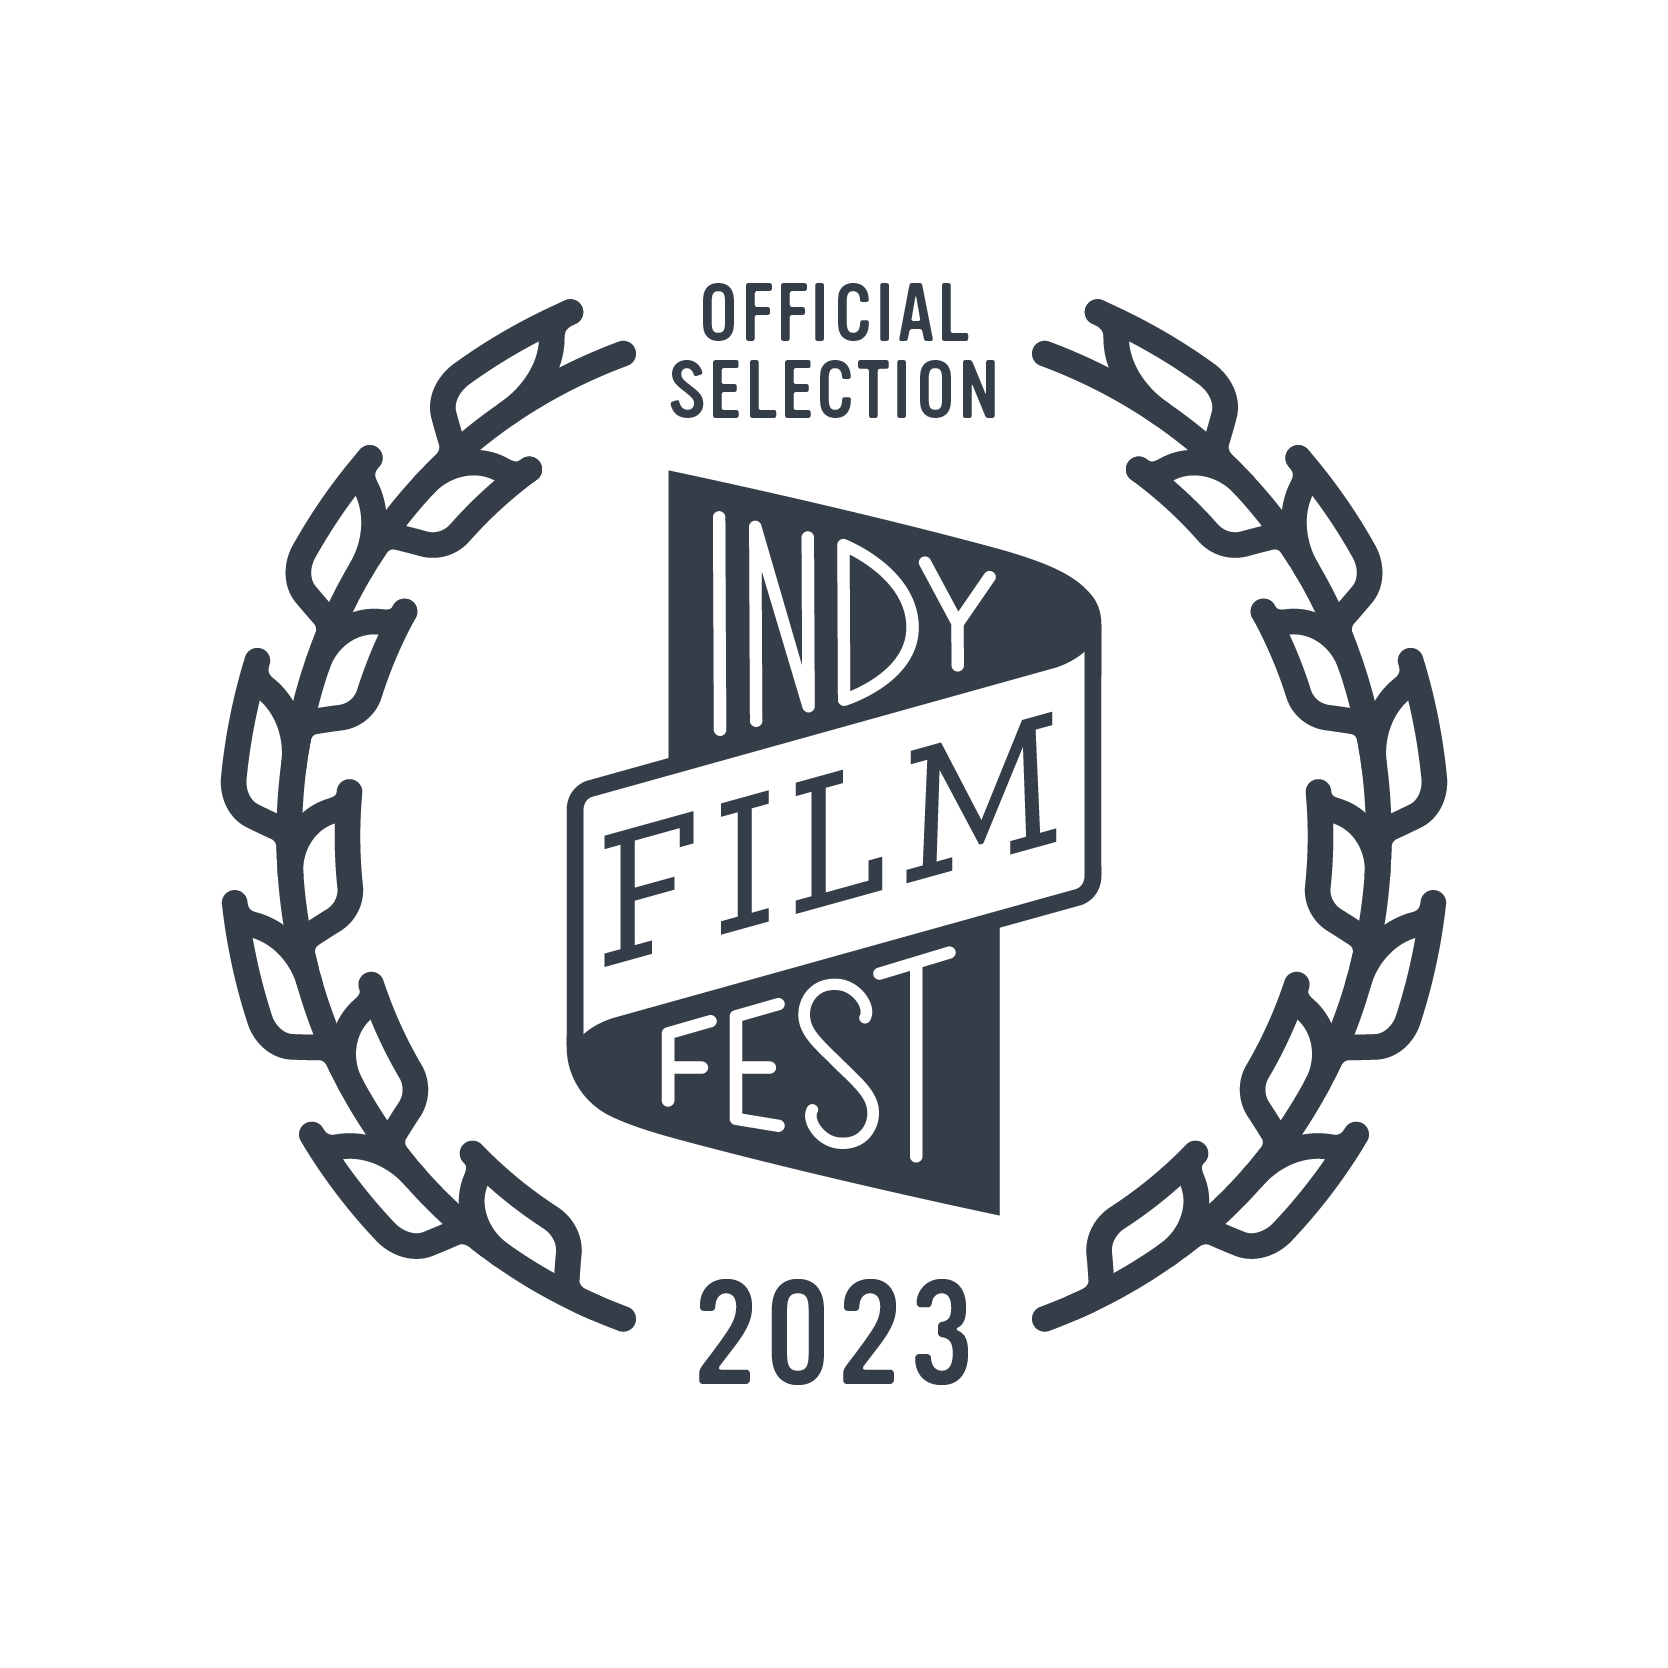 Indy Film Fest 2023 Official Selection Laurel - grey.png